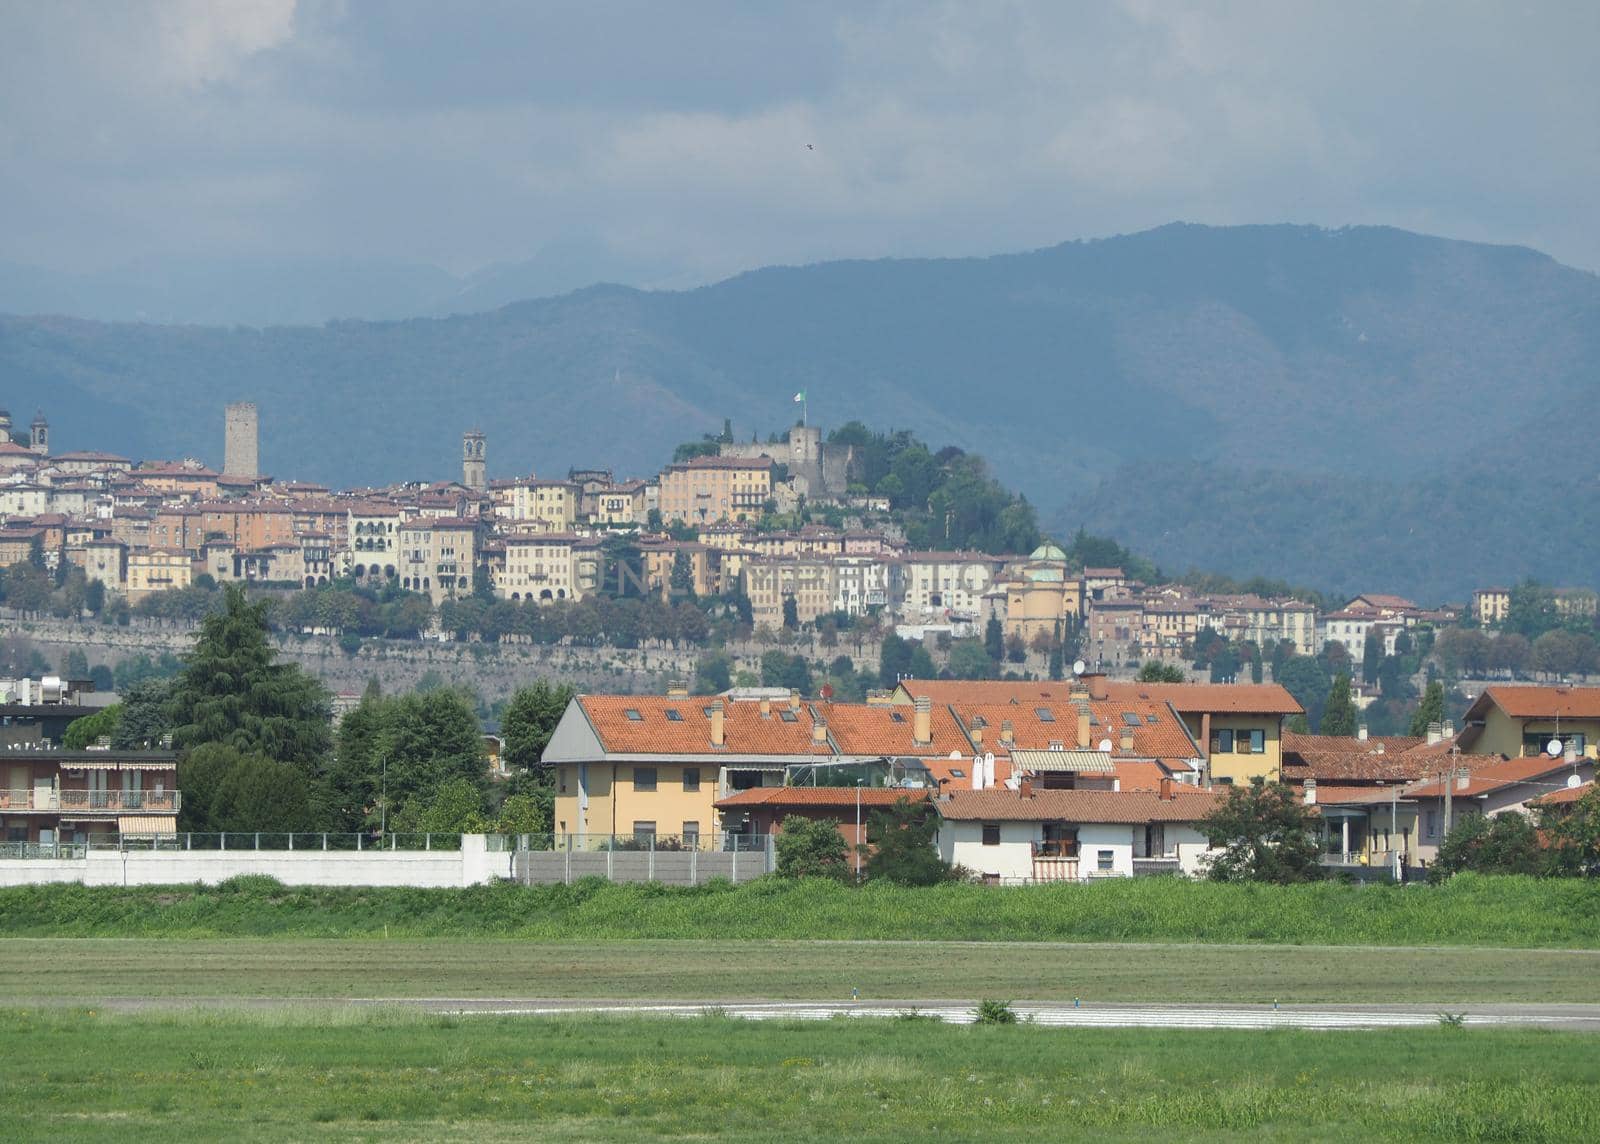 Upper town in Bergamo by claudiodivizia